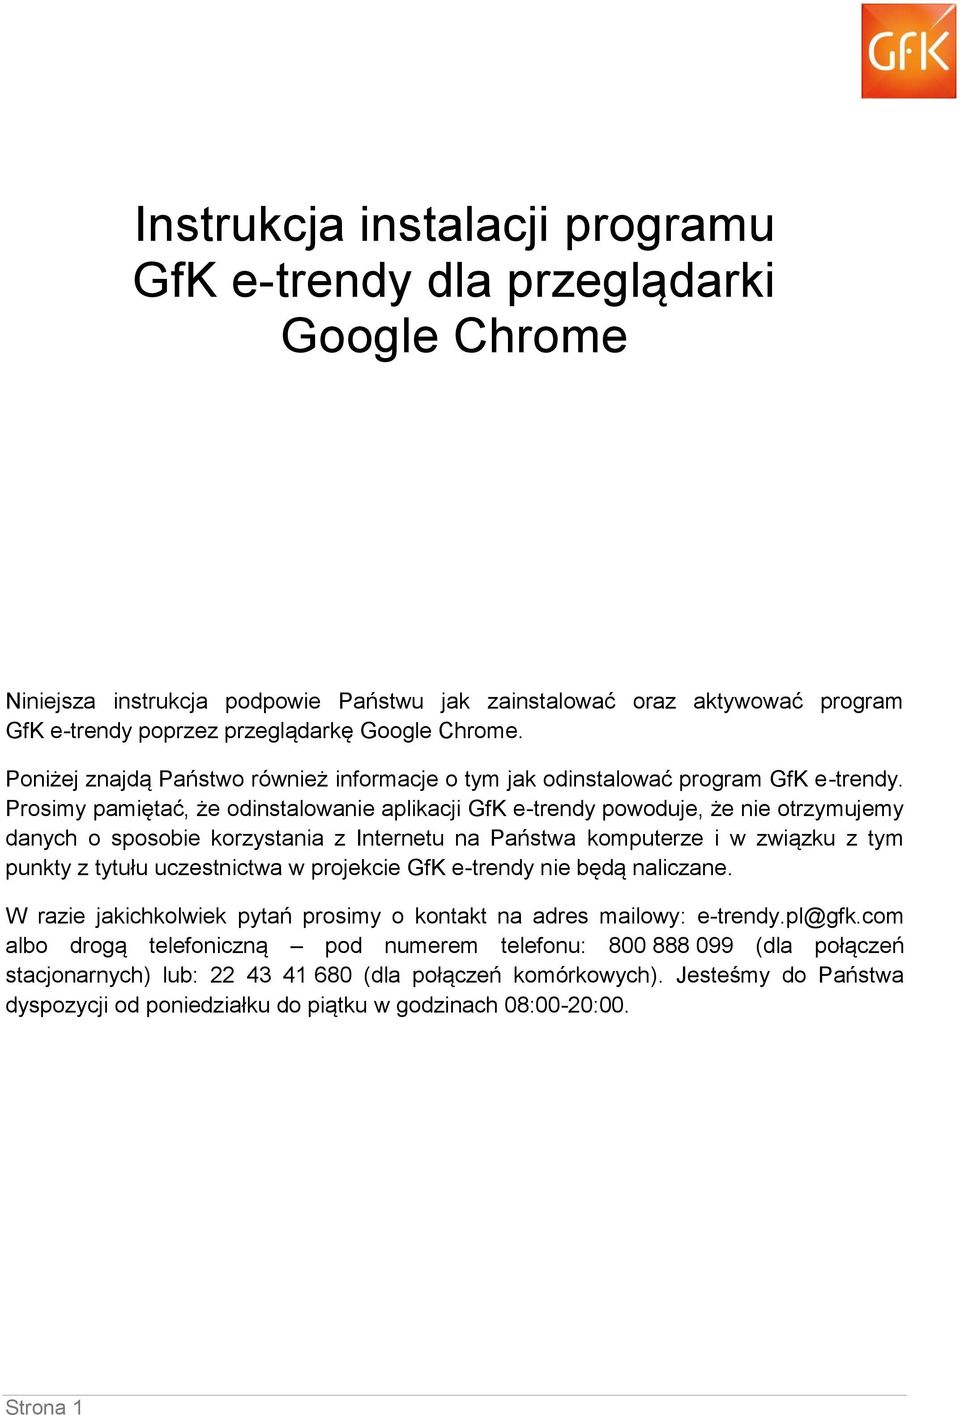 Prosimy pamiętać, że odinstalowanie aplikacji GfK e-trendy powoduje, że nie otrzymujemy danych o sposobie korzystania z Internetu na Państwa komputerze i w związku z tym punkty z tytułu uczestnictwa